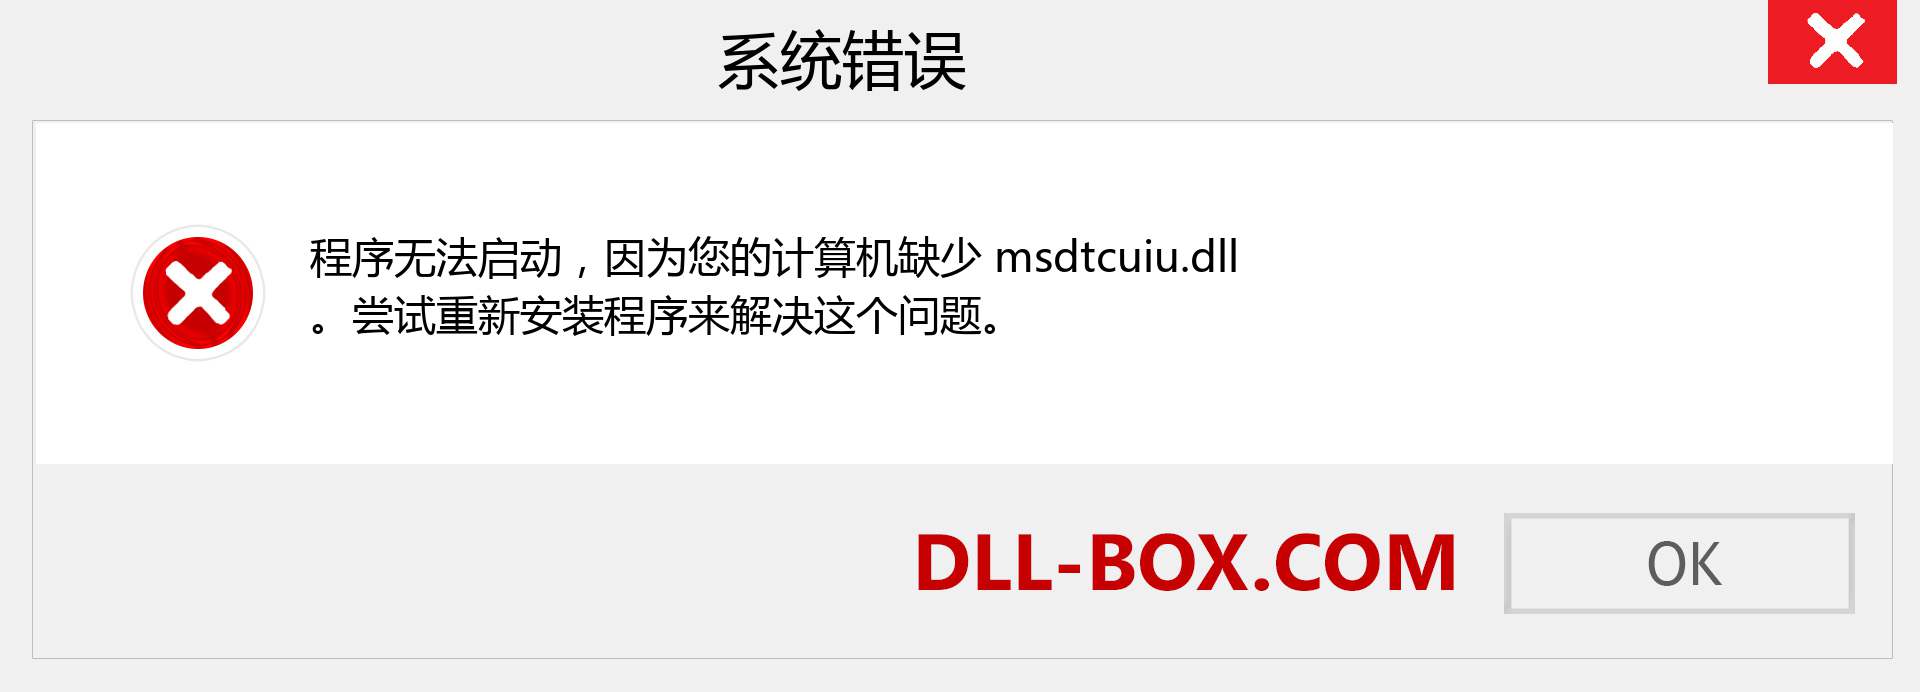 msdtcuiu.dll 文件丢失？。 适用于 Windows 7、8、10 的下载 - 修复 Windows、照片、图像上的 msdtcuiu dll 丢失错误